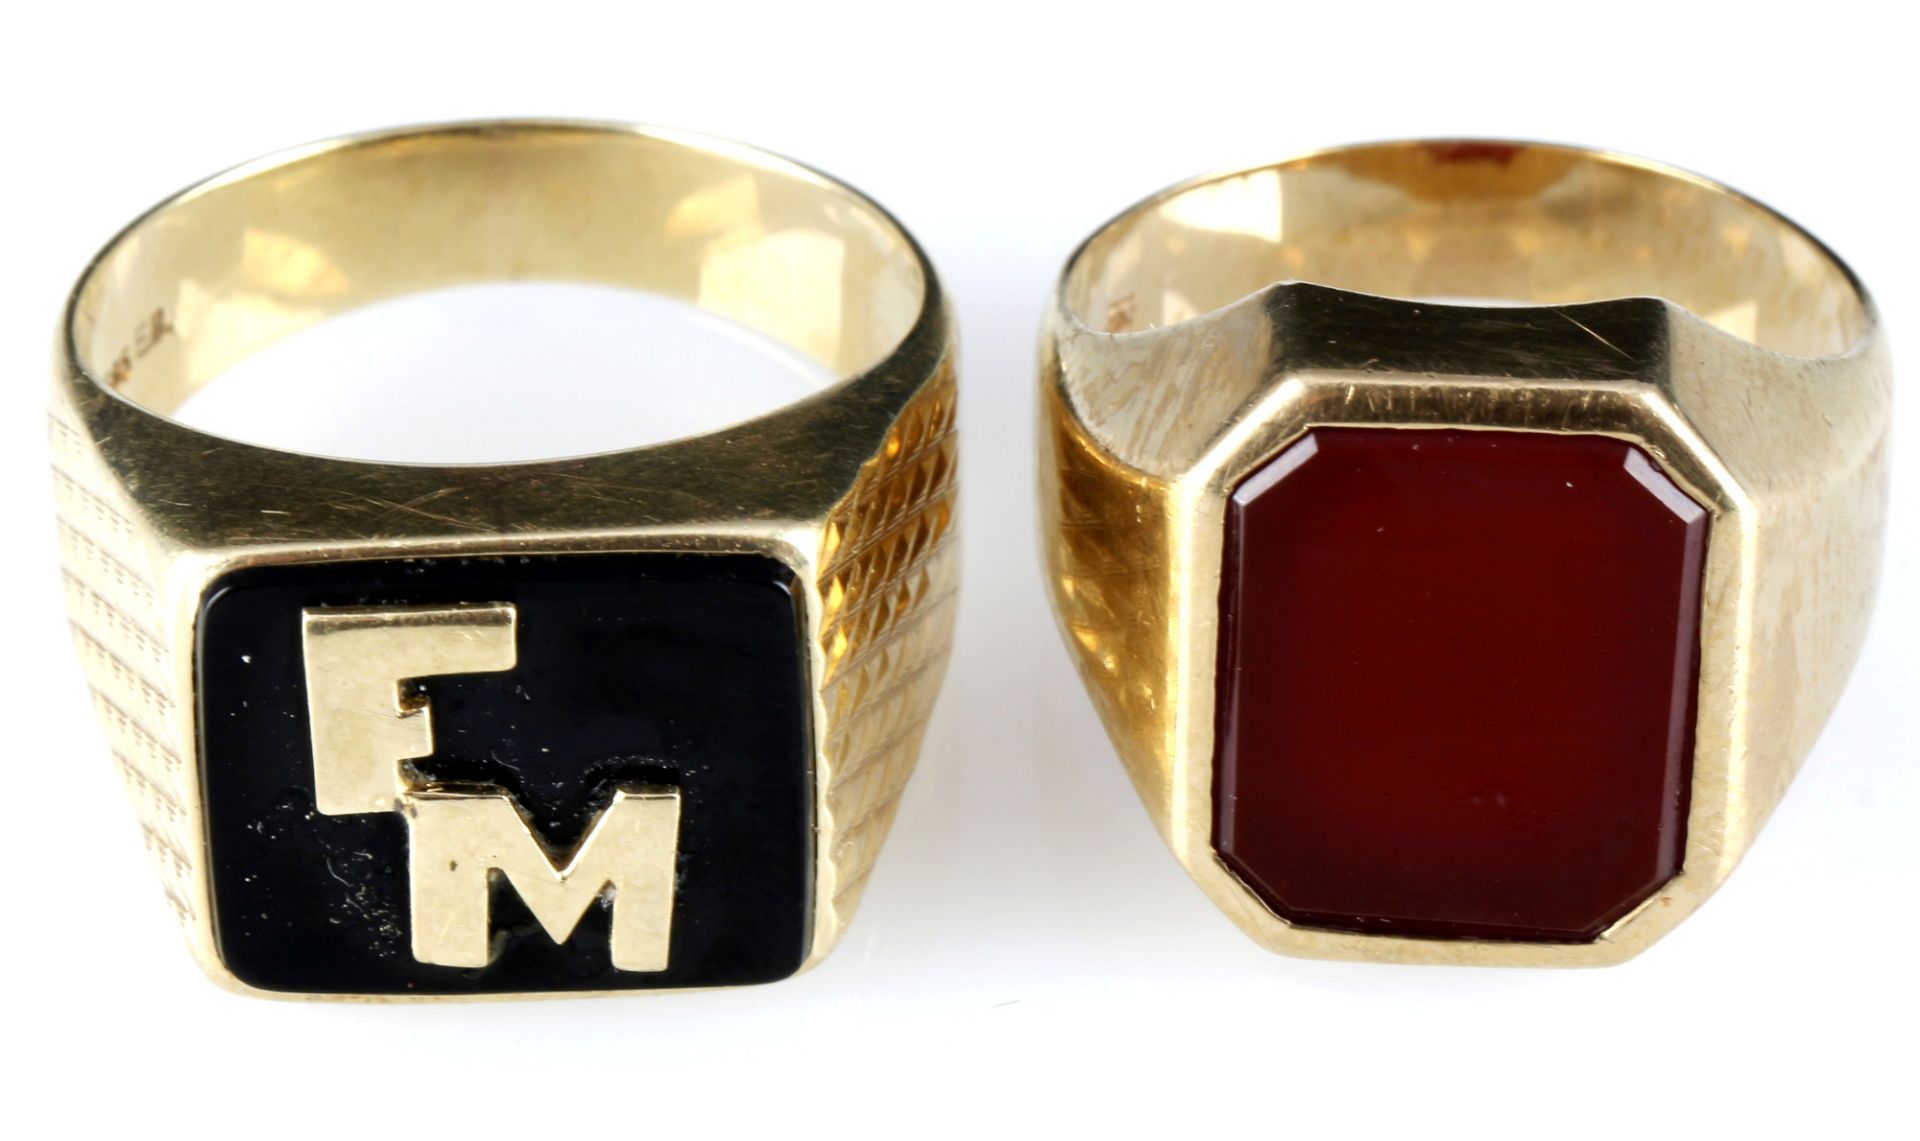 333 - 585 gold 2 signet rings and cufflinks, 8K - 14K Siegelringe und Manschettenknöpfe, - Image 5 of 6